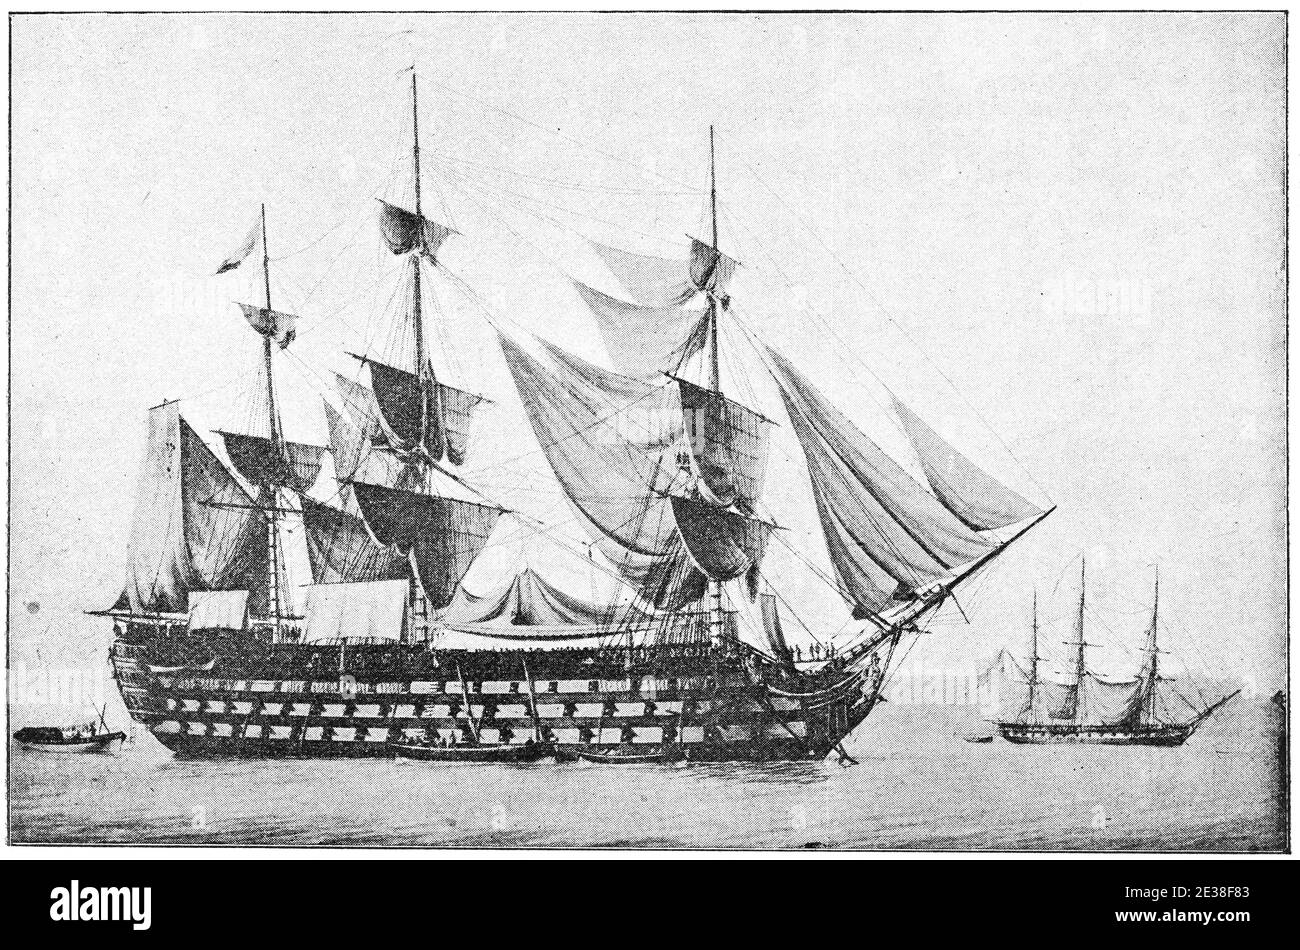 Die Wagram (1810) - ein 118-Kanonenschiff der Linie der französischen Marine, vom Typ Ozean. Illustration des 19. Jahrhunderts. Deutschland. Weißer Hintergrund. Stockfoto